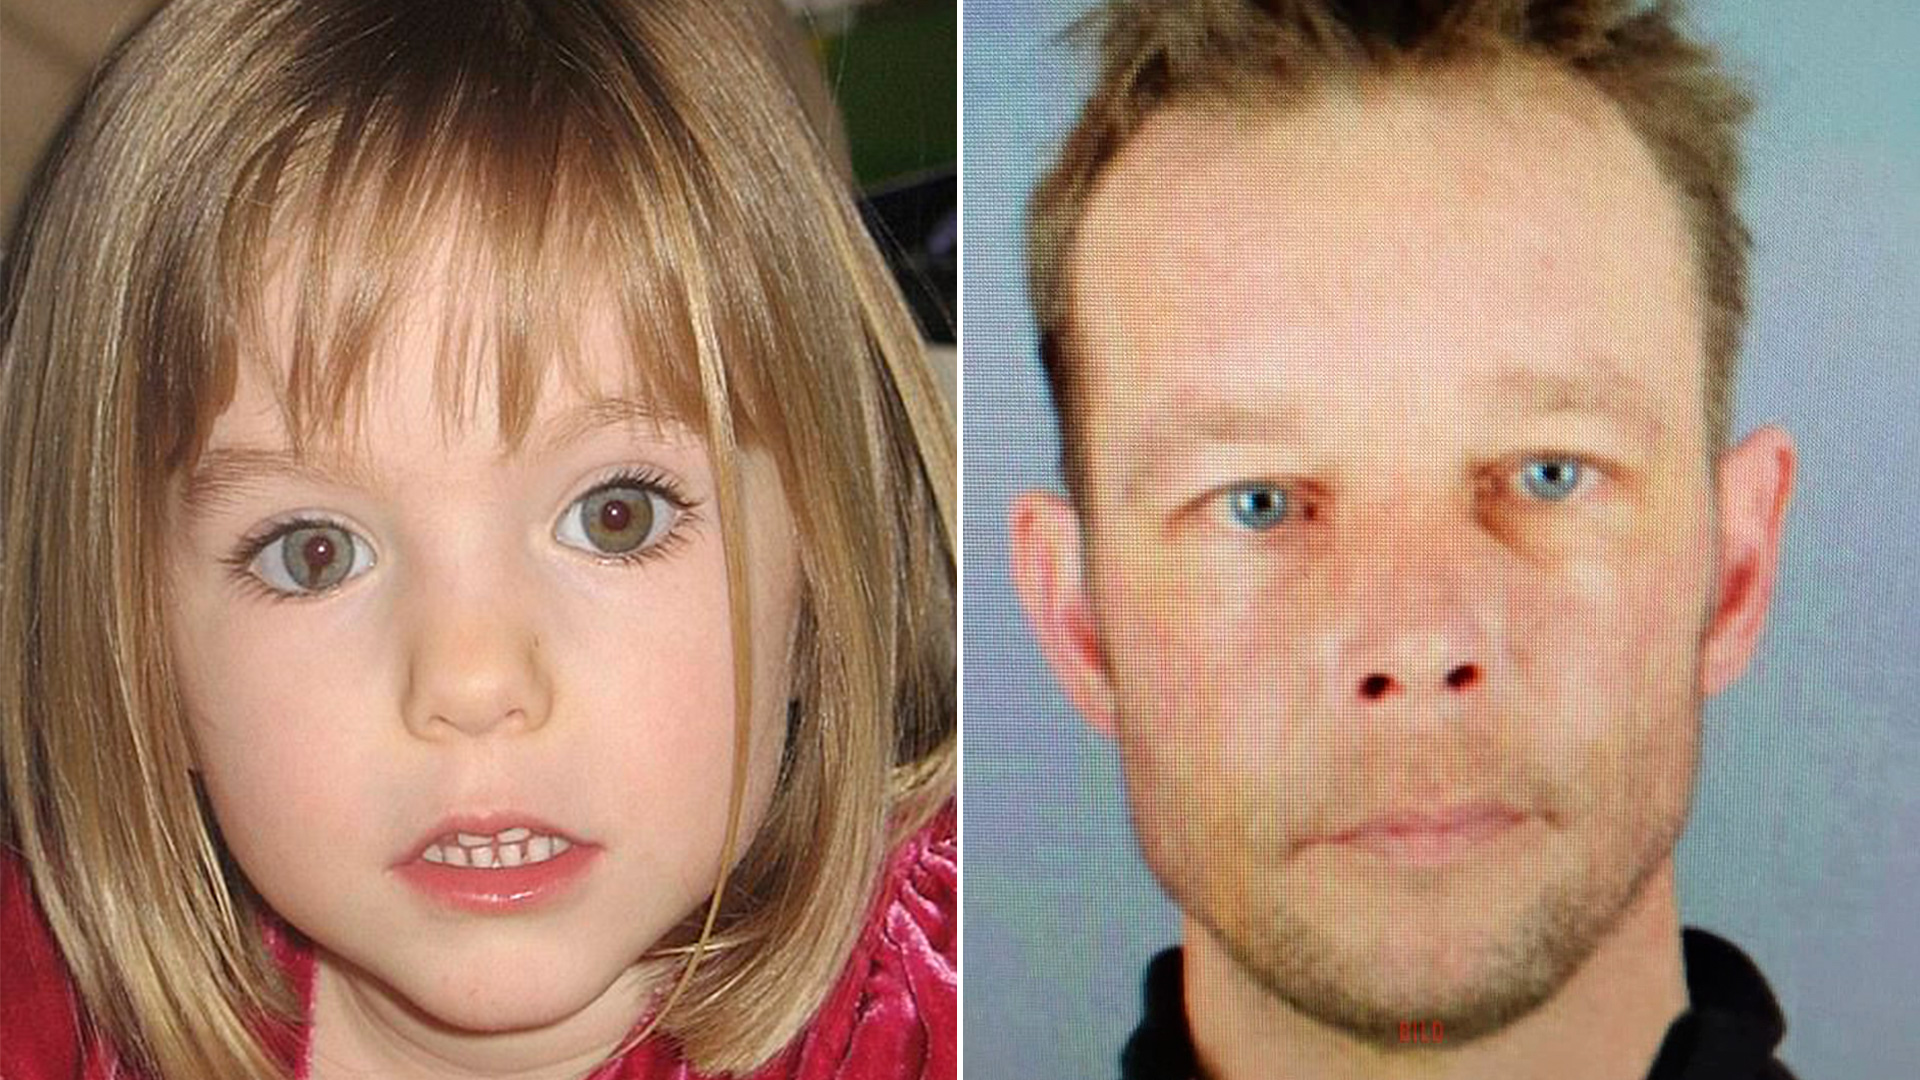 El principal sospechoso en el caso de Madeleine McCann atacó sexualmente a una niña un mes antes de la desaparición de la pequeña británica